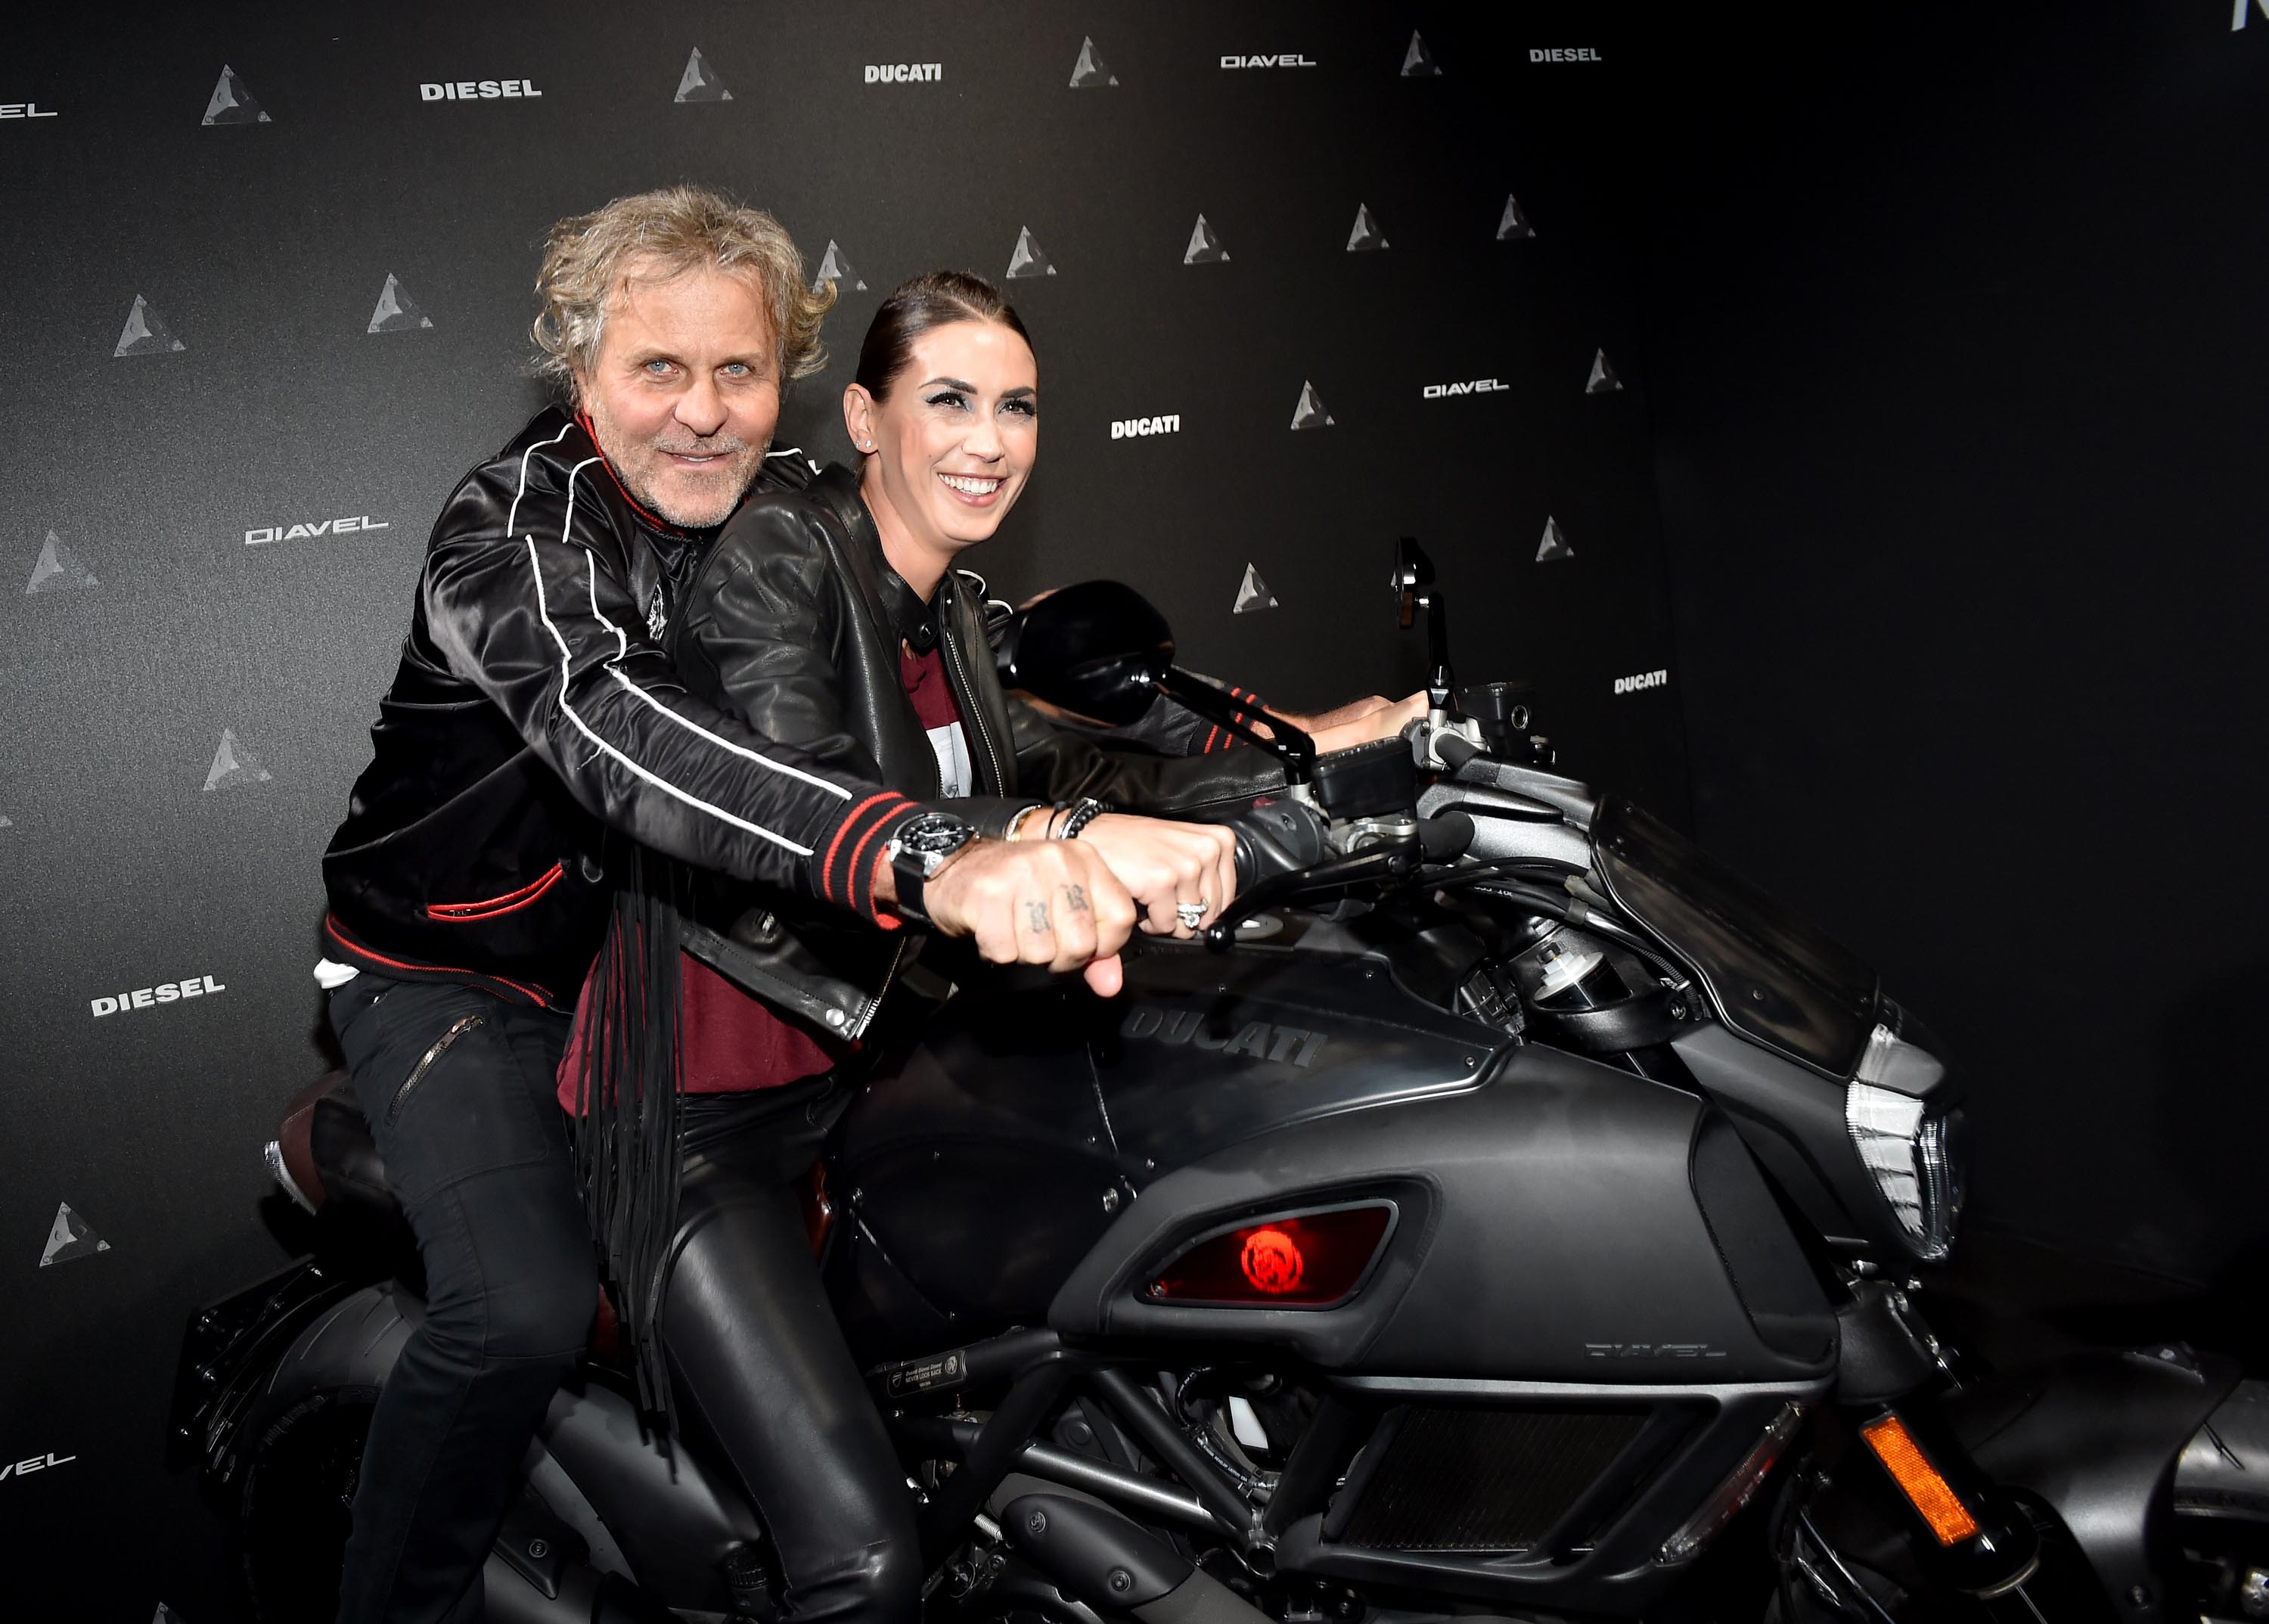 Melissa Satta attends DDD Ducati Diavel Diesel presentation